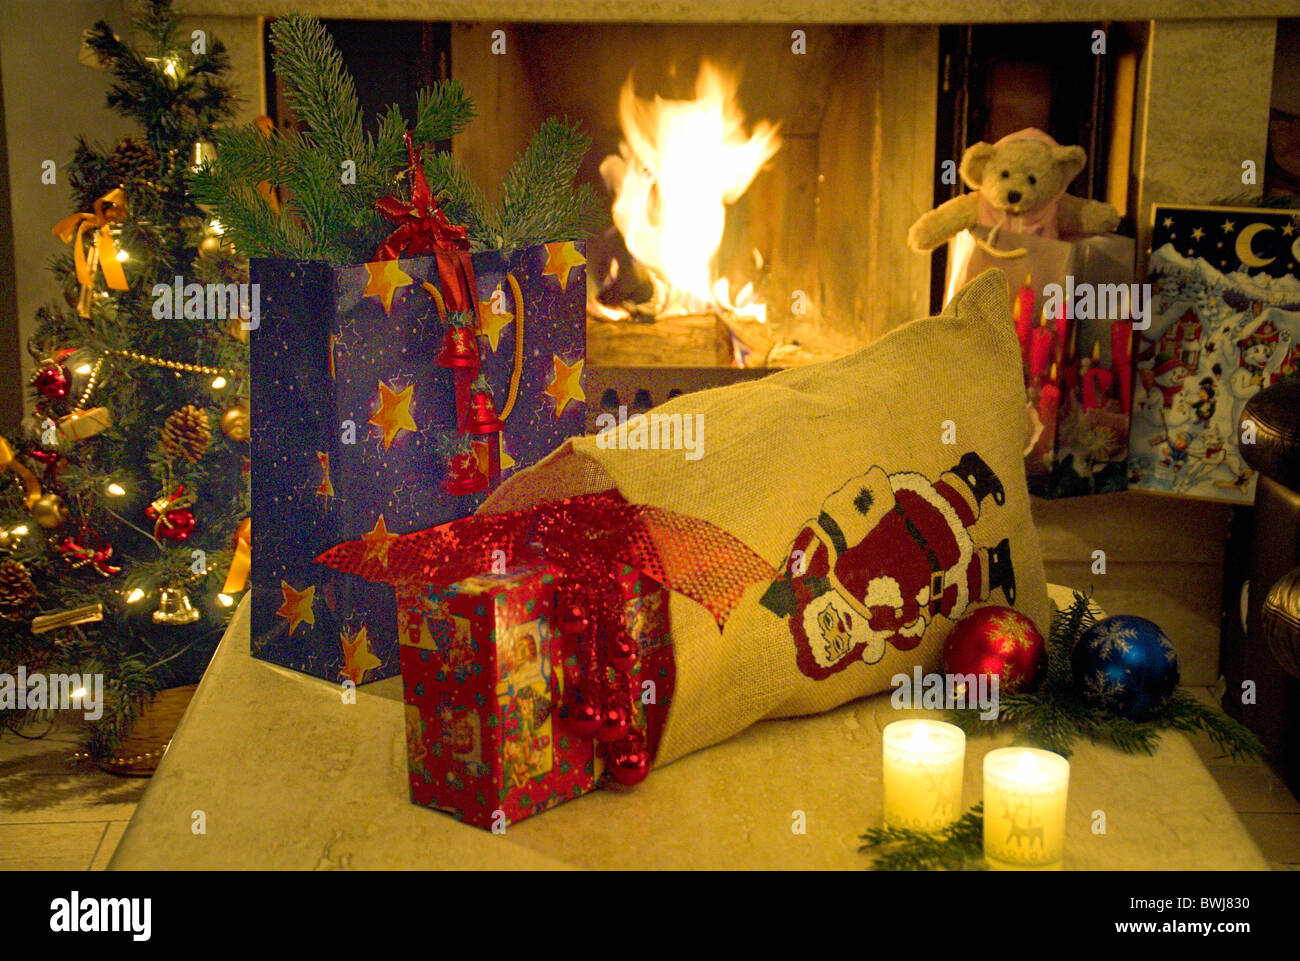 https://c8.alamy.com/compde/bwj830/noch-leben-noch-weihnachtsgeschenke-leckereien-tasche-weihnachtsbaum-weihnachtsbaum-schornstein-kamin-kaminfeuer-ca-bwj830.jpg